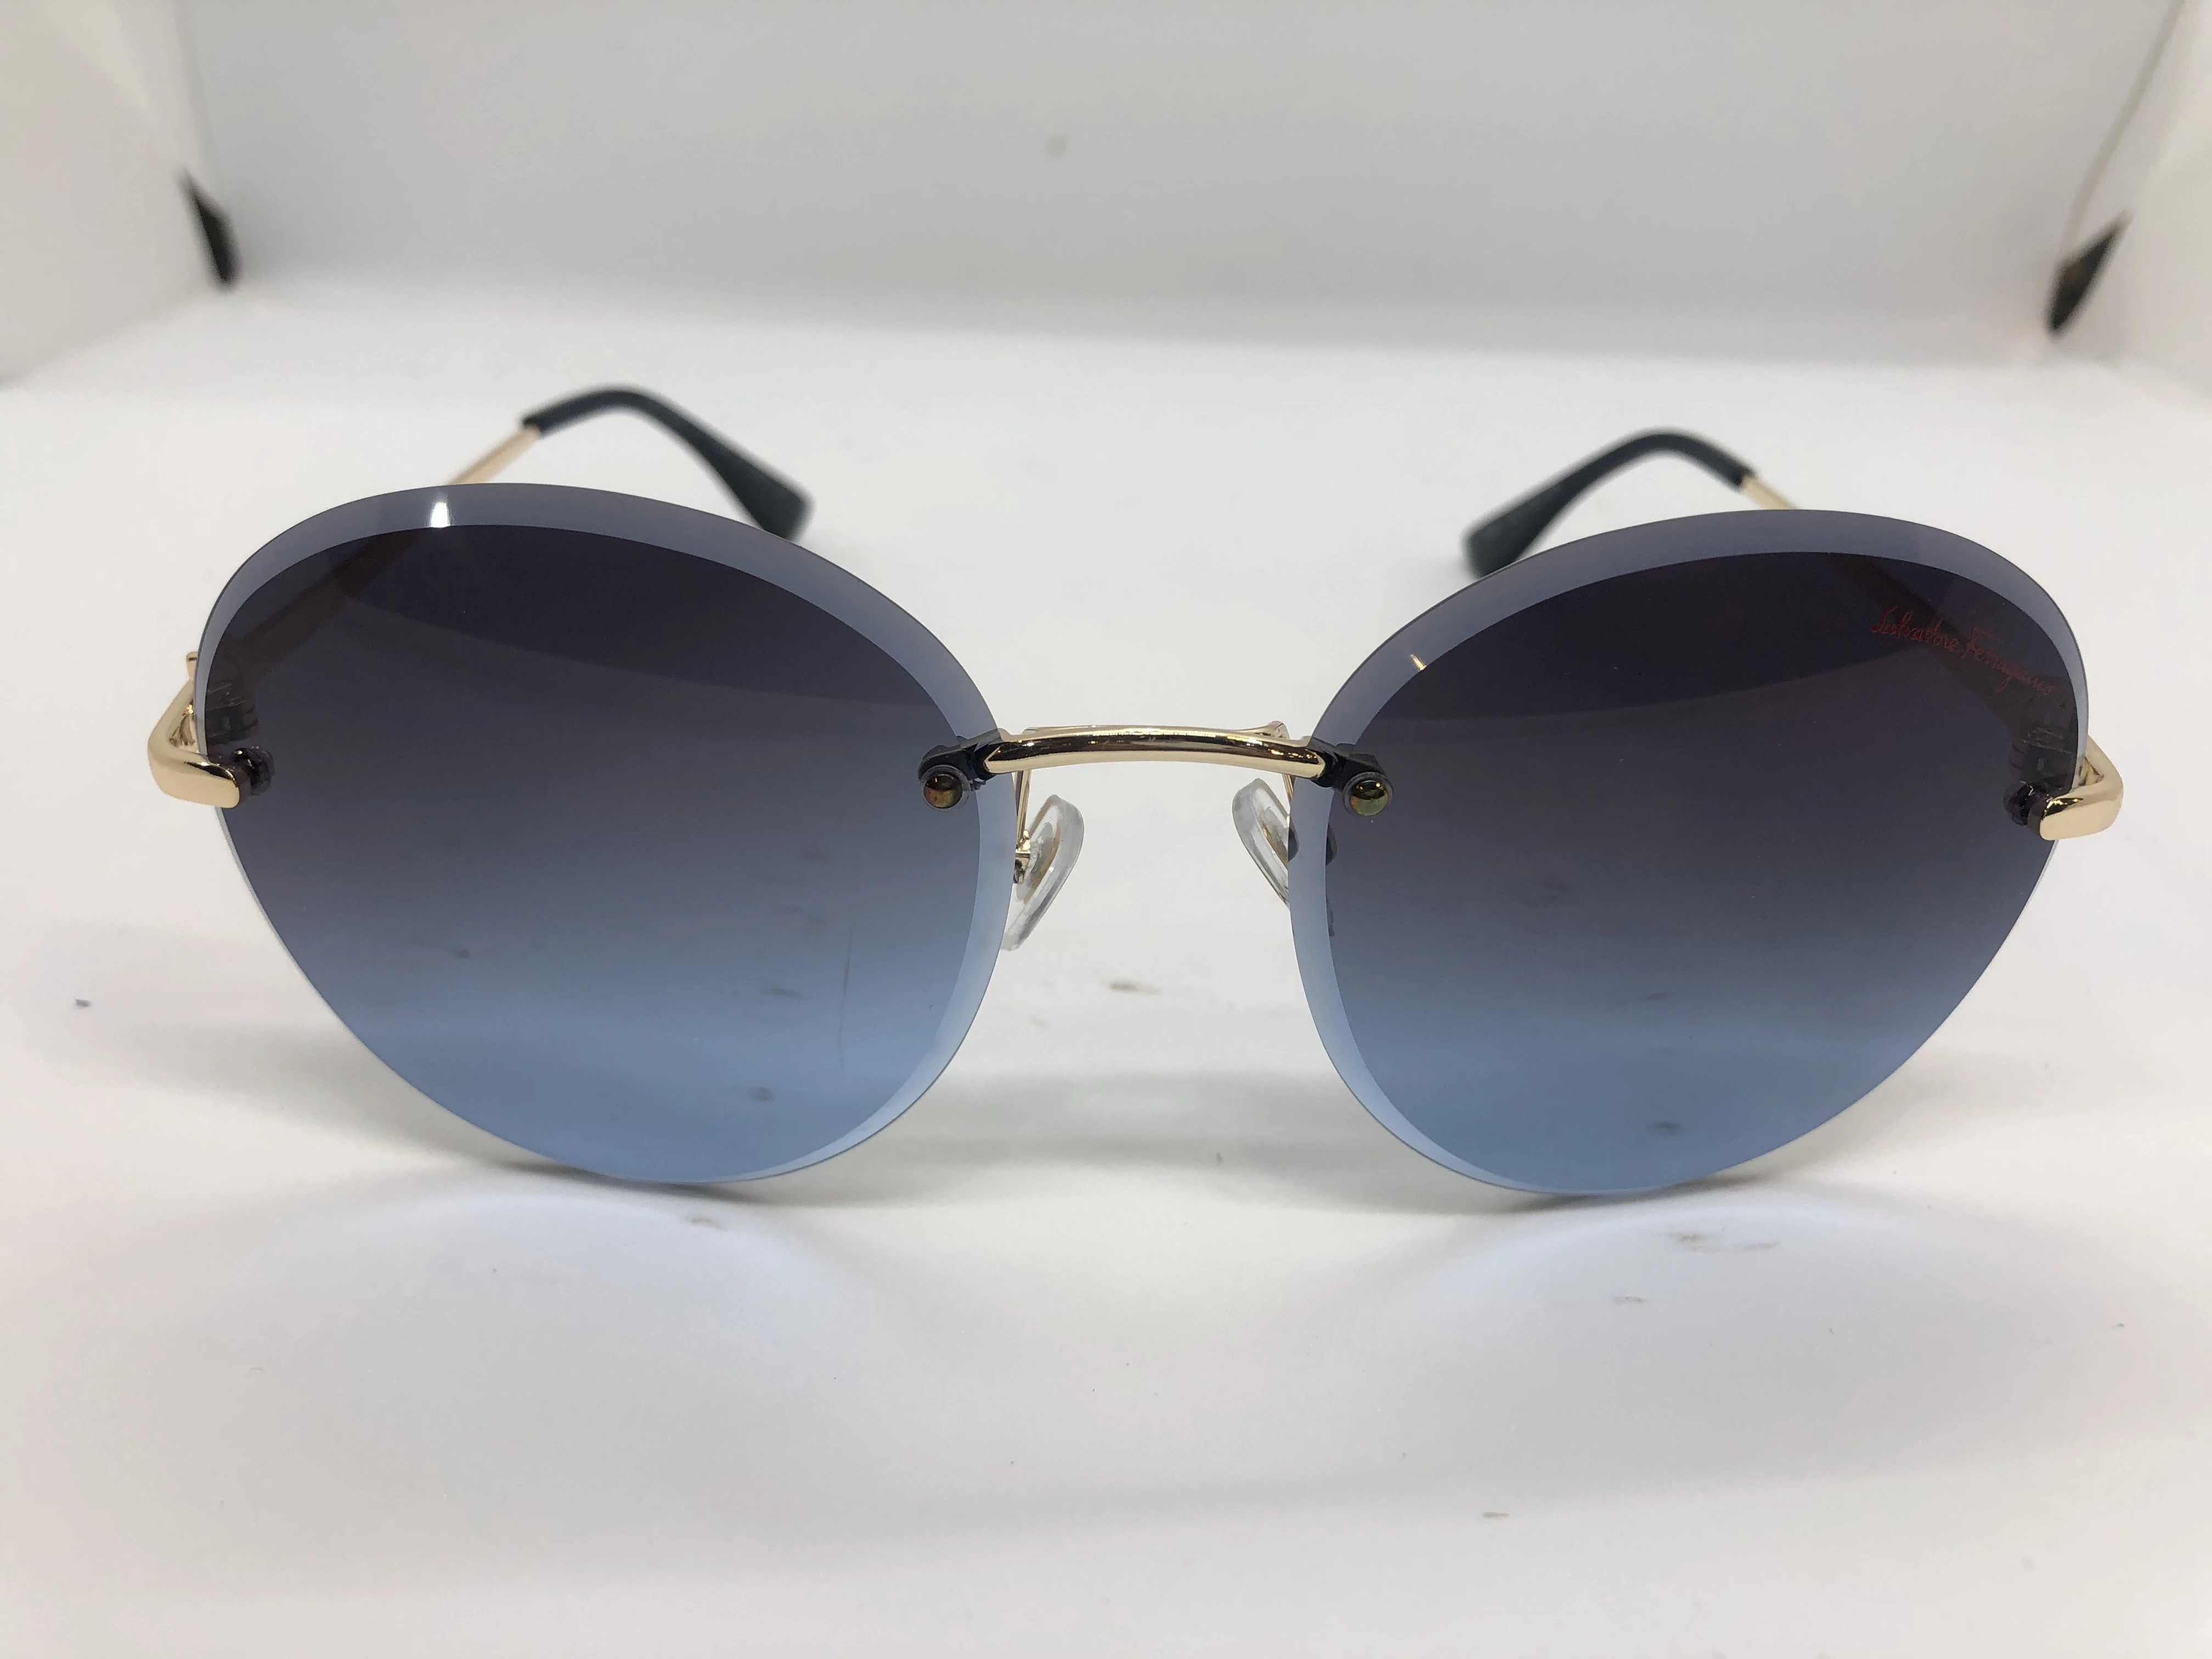 نظارة شمسية - من سلفاتوري فيراغامو- بدون اطار - وعدسات كحلي - وزراع معدن ذهبي - حريمي